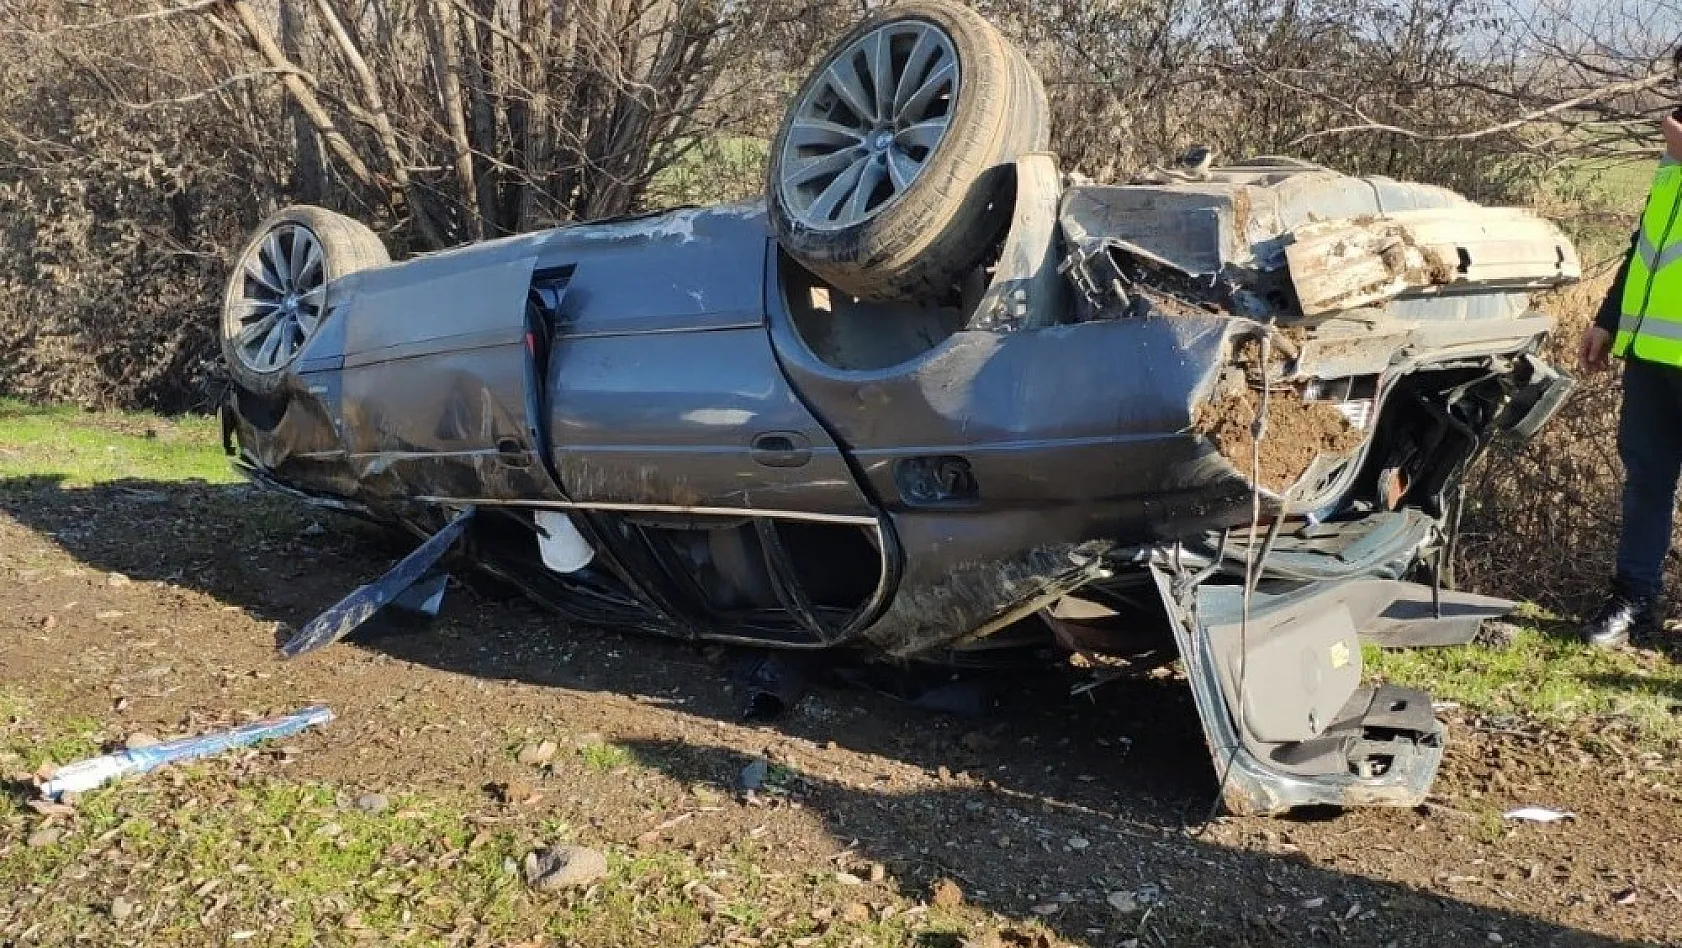 Bingöl'de otomobil takla attı: 1 ölü 